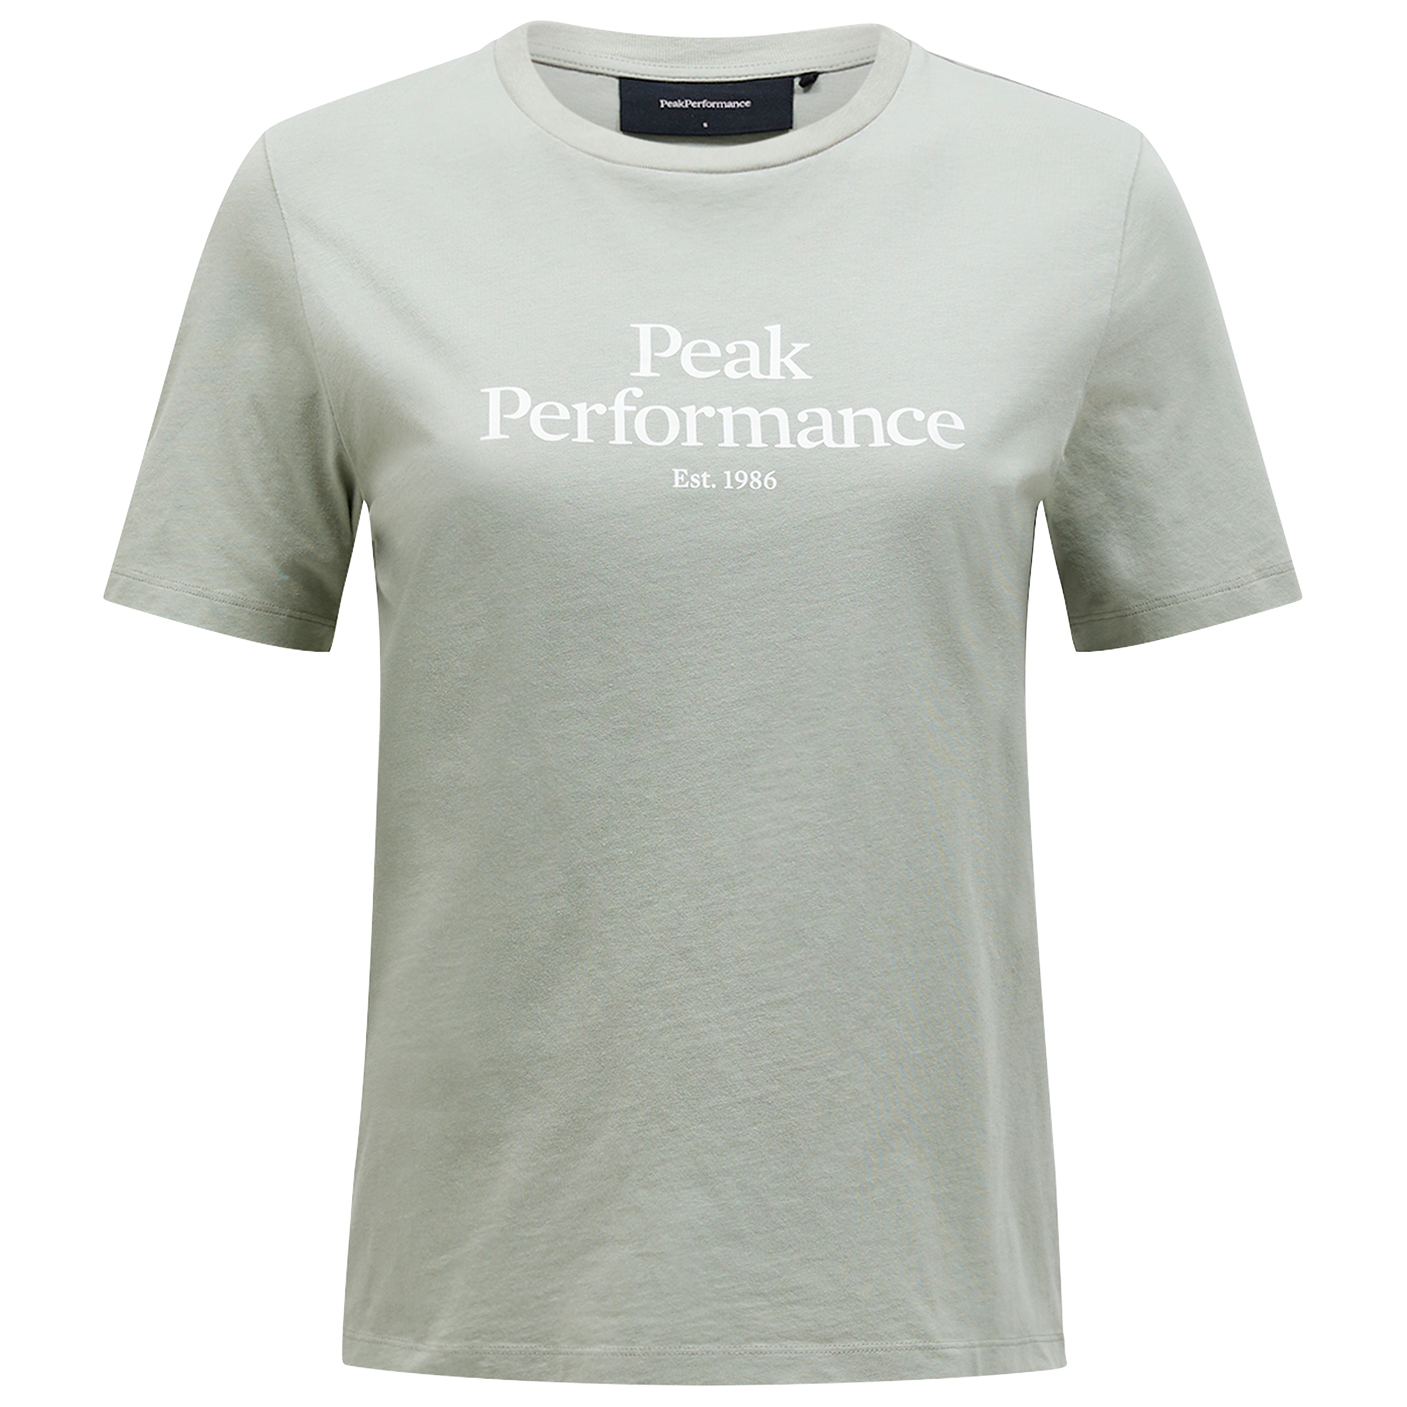 футболка с принтом original tee peak performance цвет med grey melange black Футболка Peak Performance Women's Original Tee, цвет Limit Green